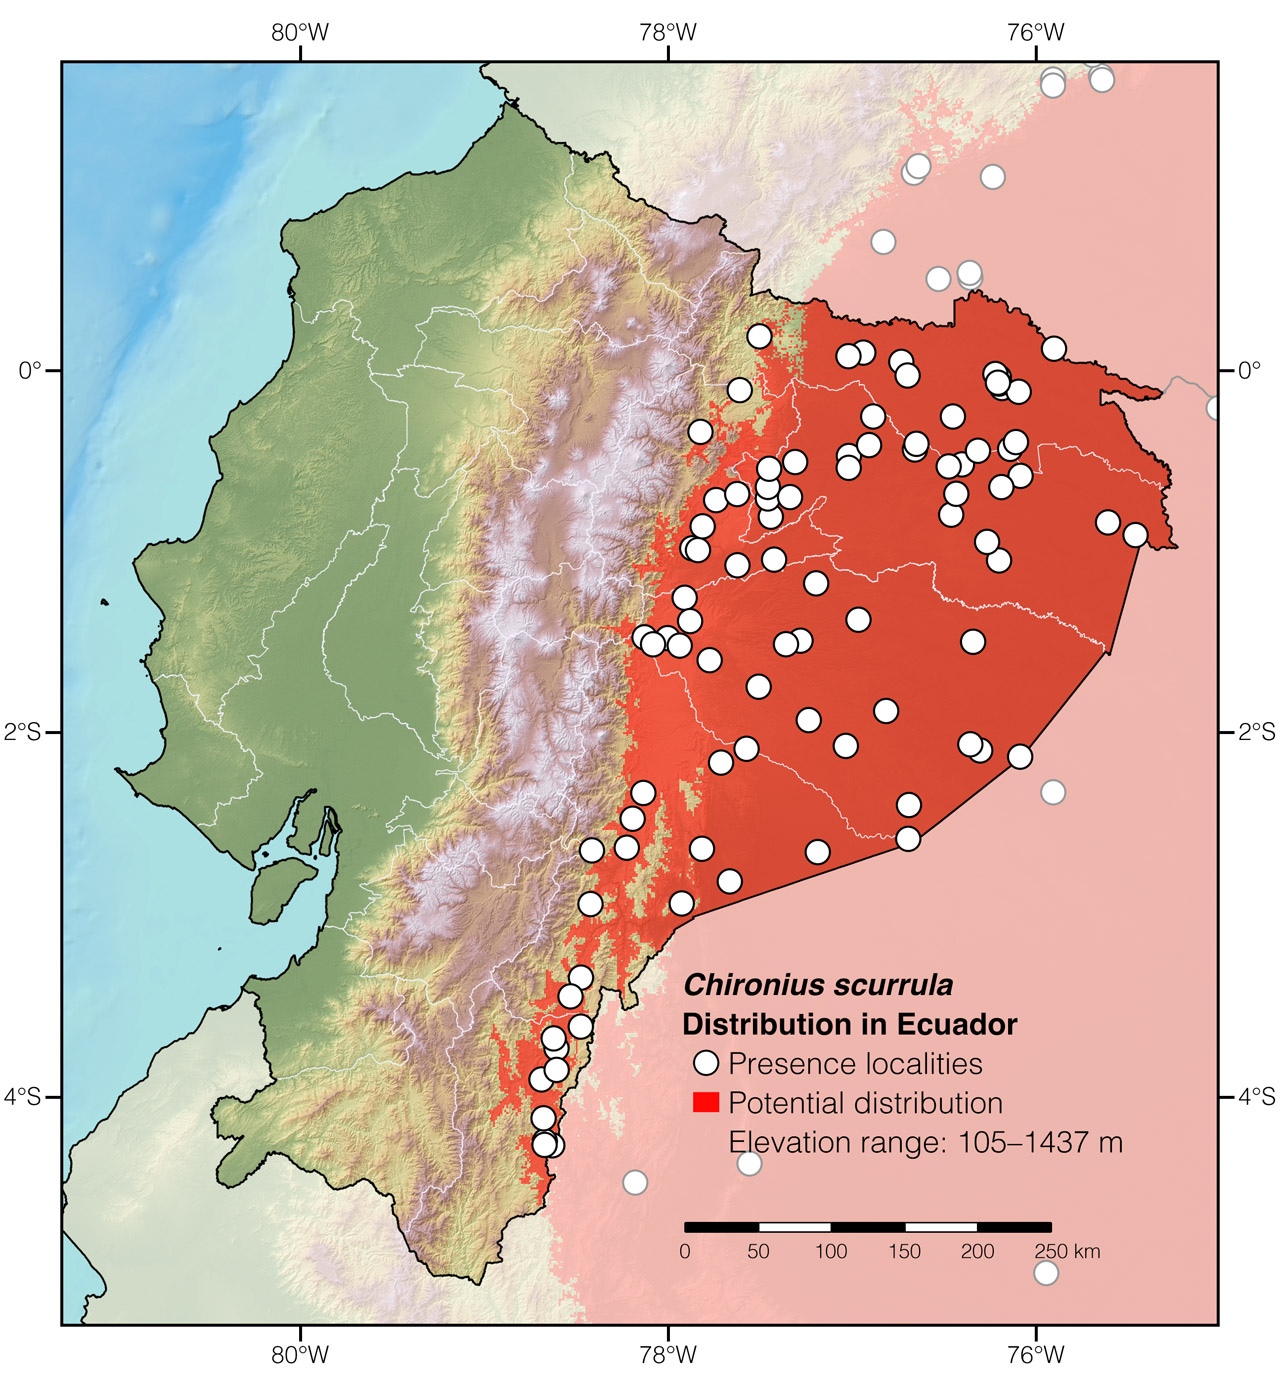 Distribution of Chironius scurrula in Ecuador